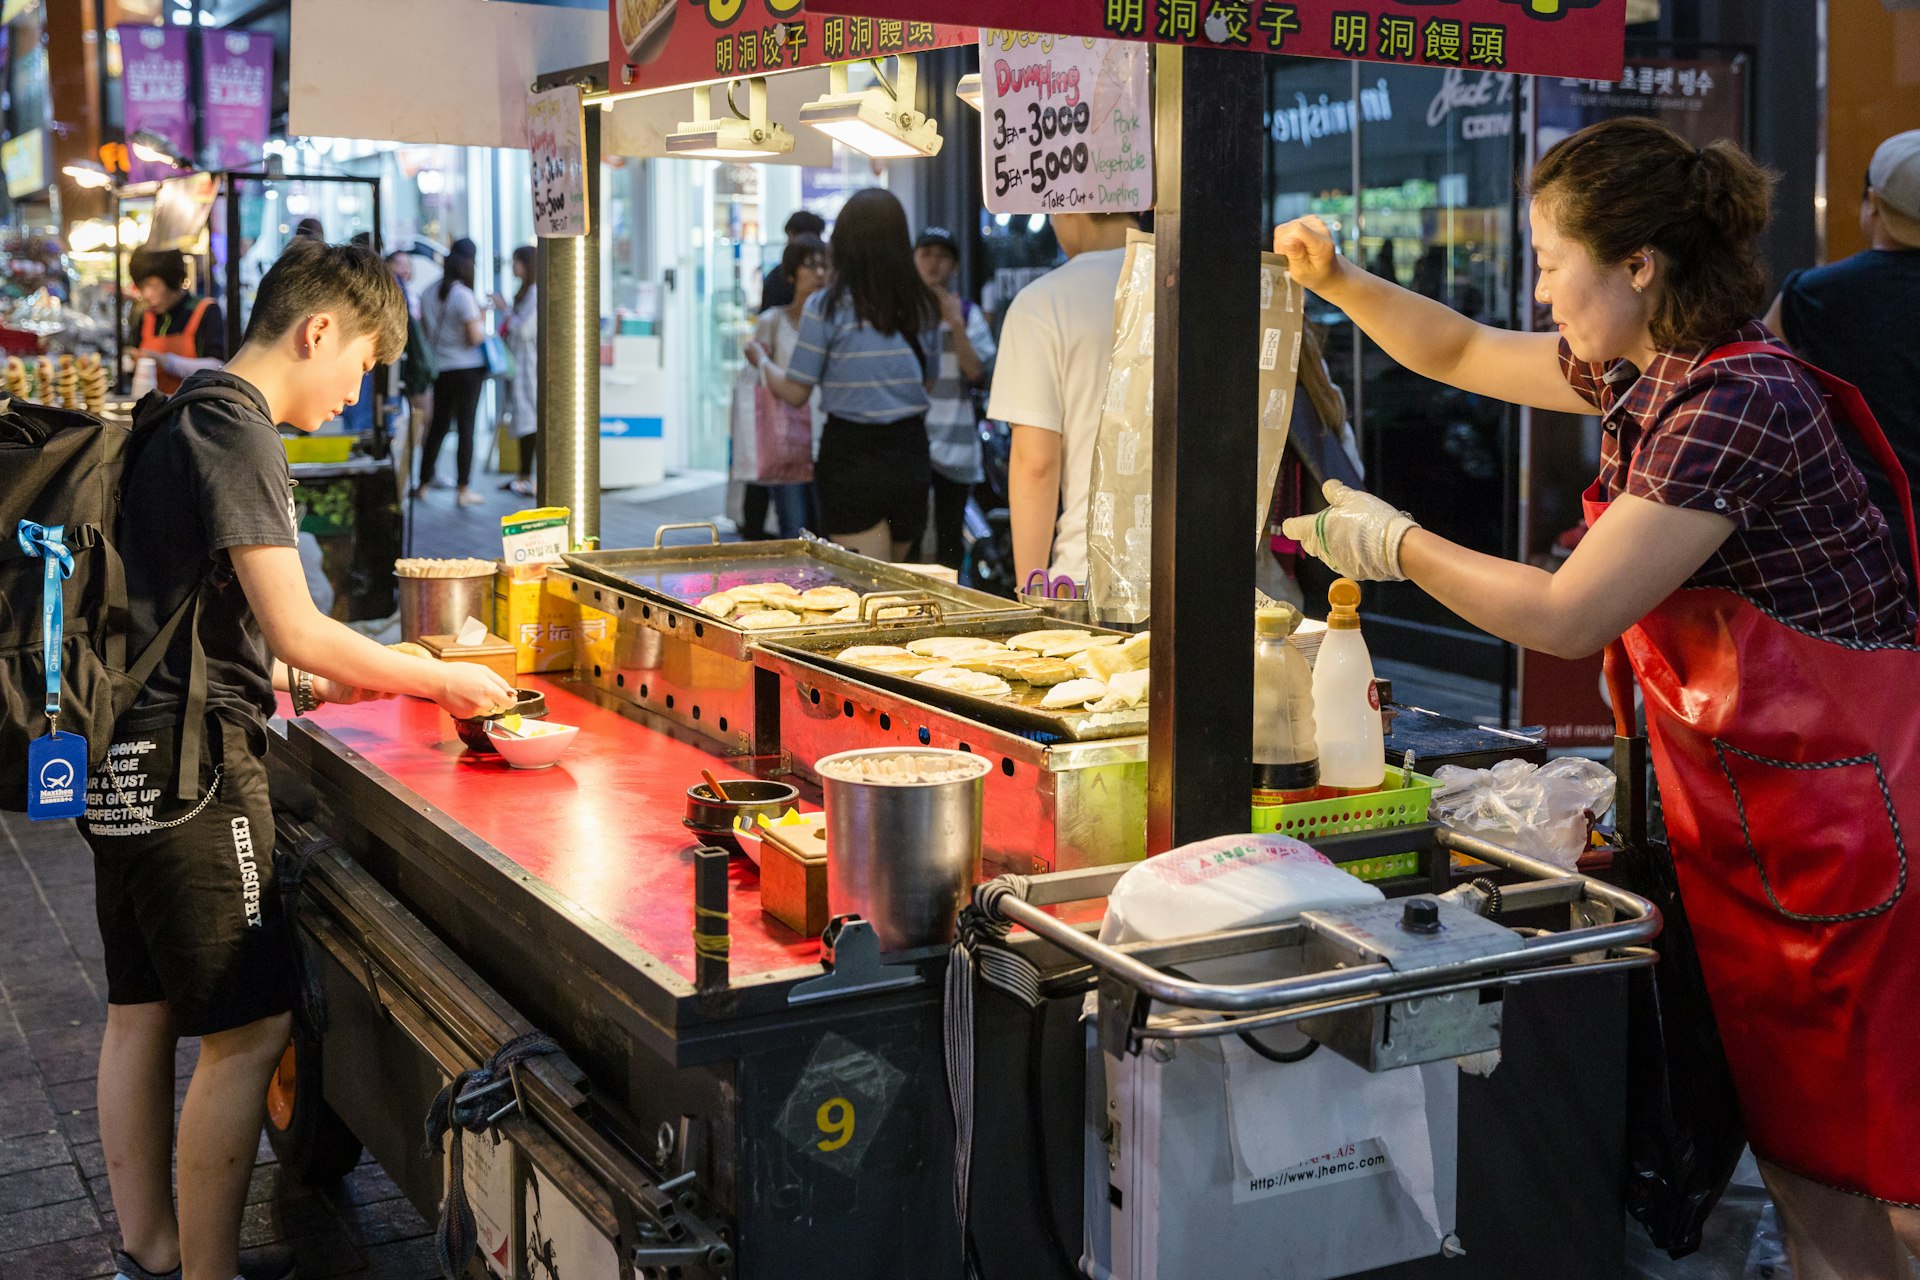  A man eats street food at a stall at Myeong-Dong Night Market, Seoul, South Korea